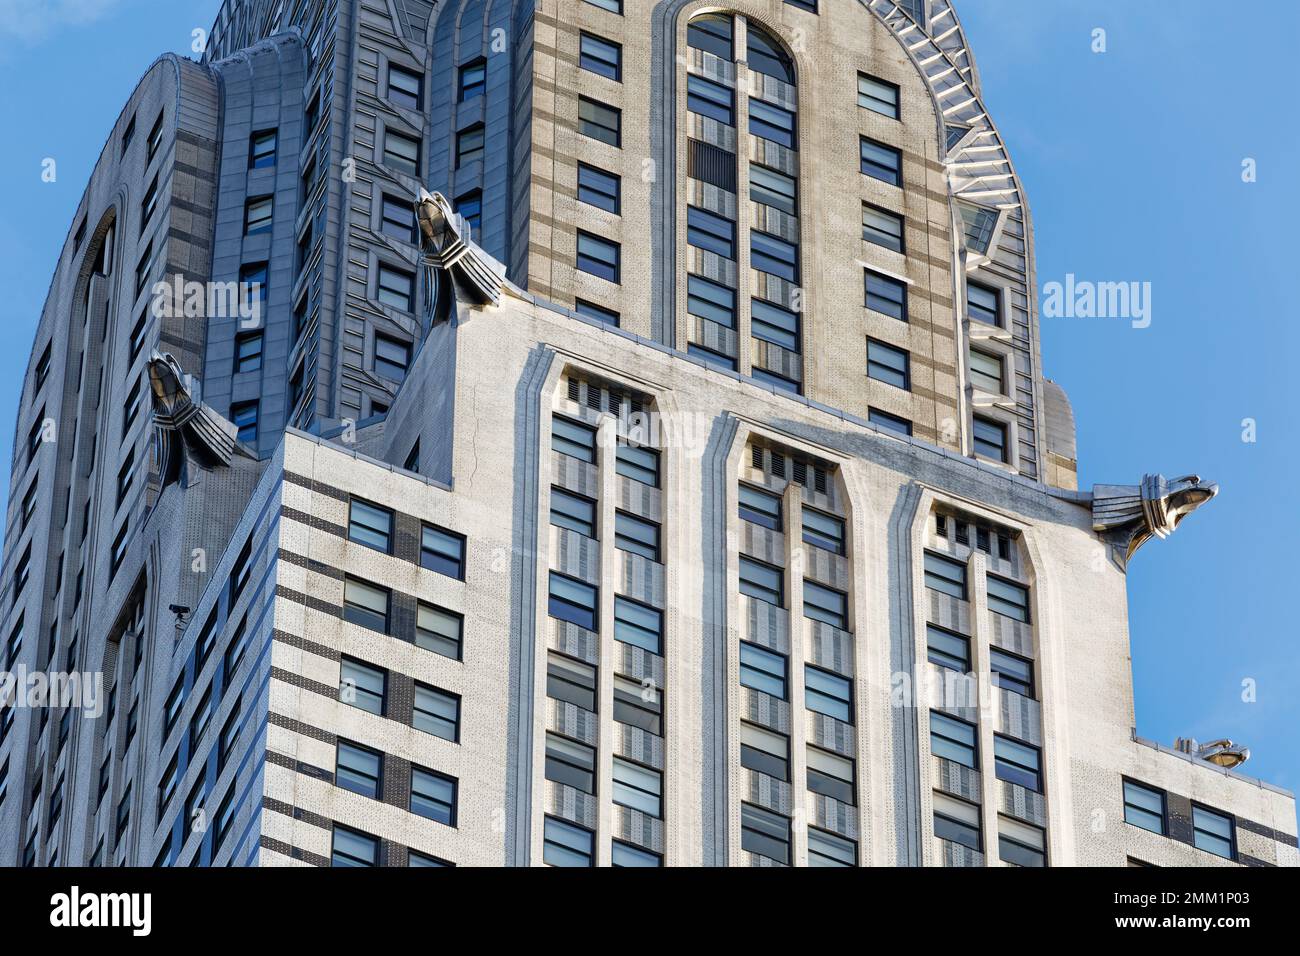 New York: I gargoyles di Eagle segnano la battuta d'arresto del Chrysler Building al 61st° piano, alla base dell'iconica guglia in acciaio inossidabile con punta ad ago. Foto Stock